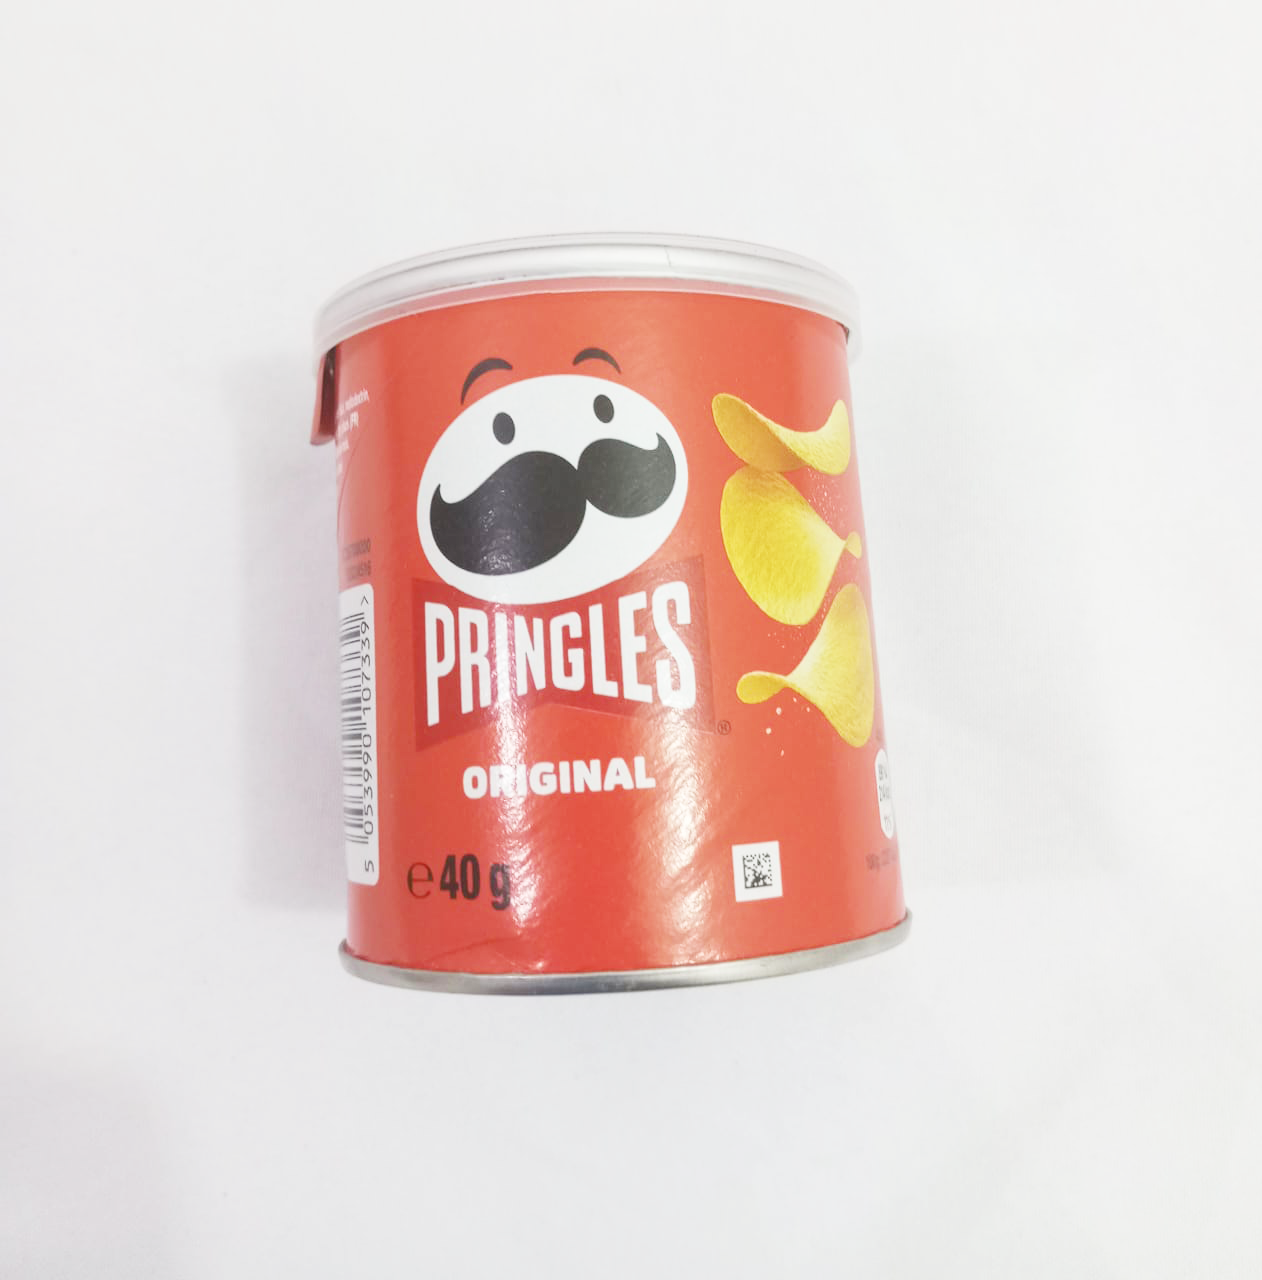 Pringles Original Potato Chips, Red, 40g |GMP36a